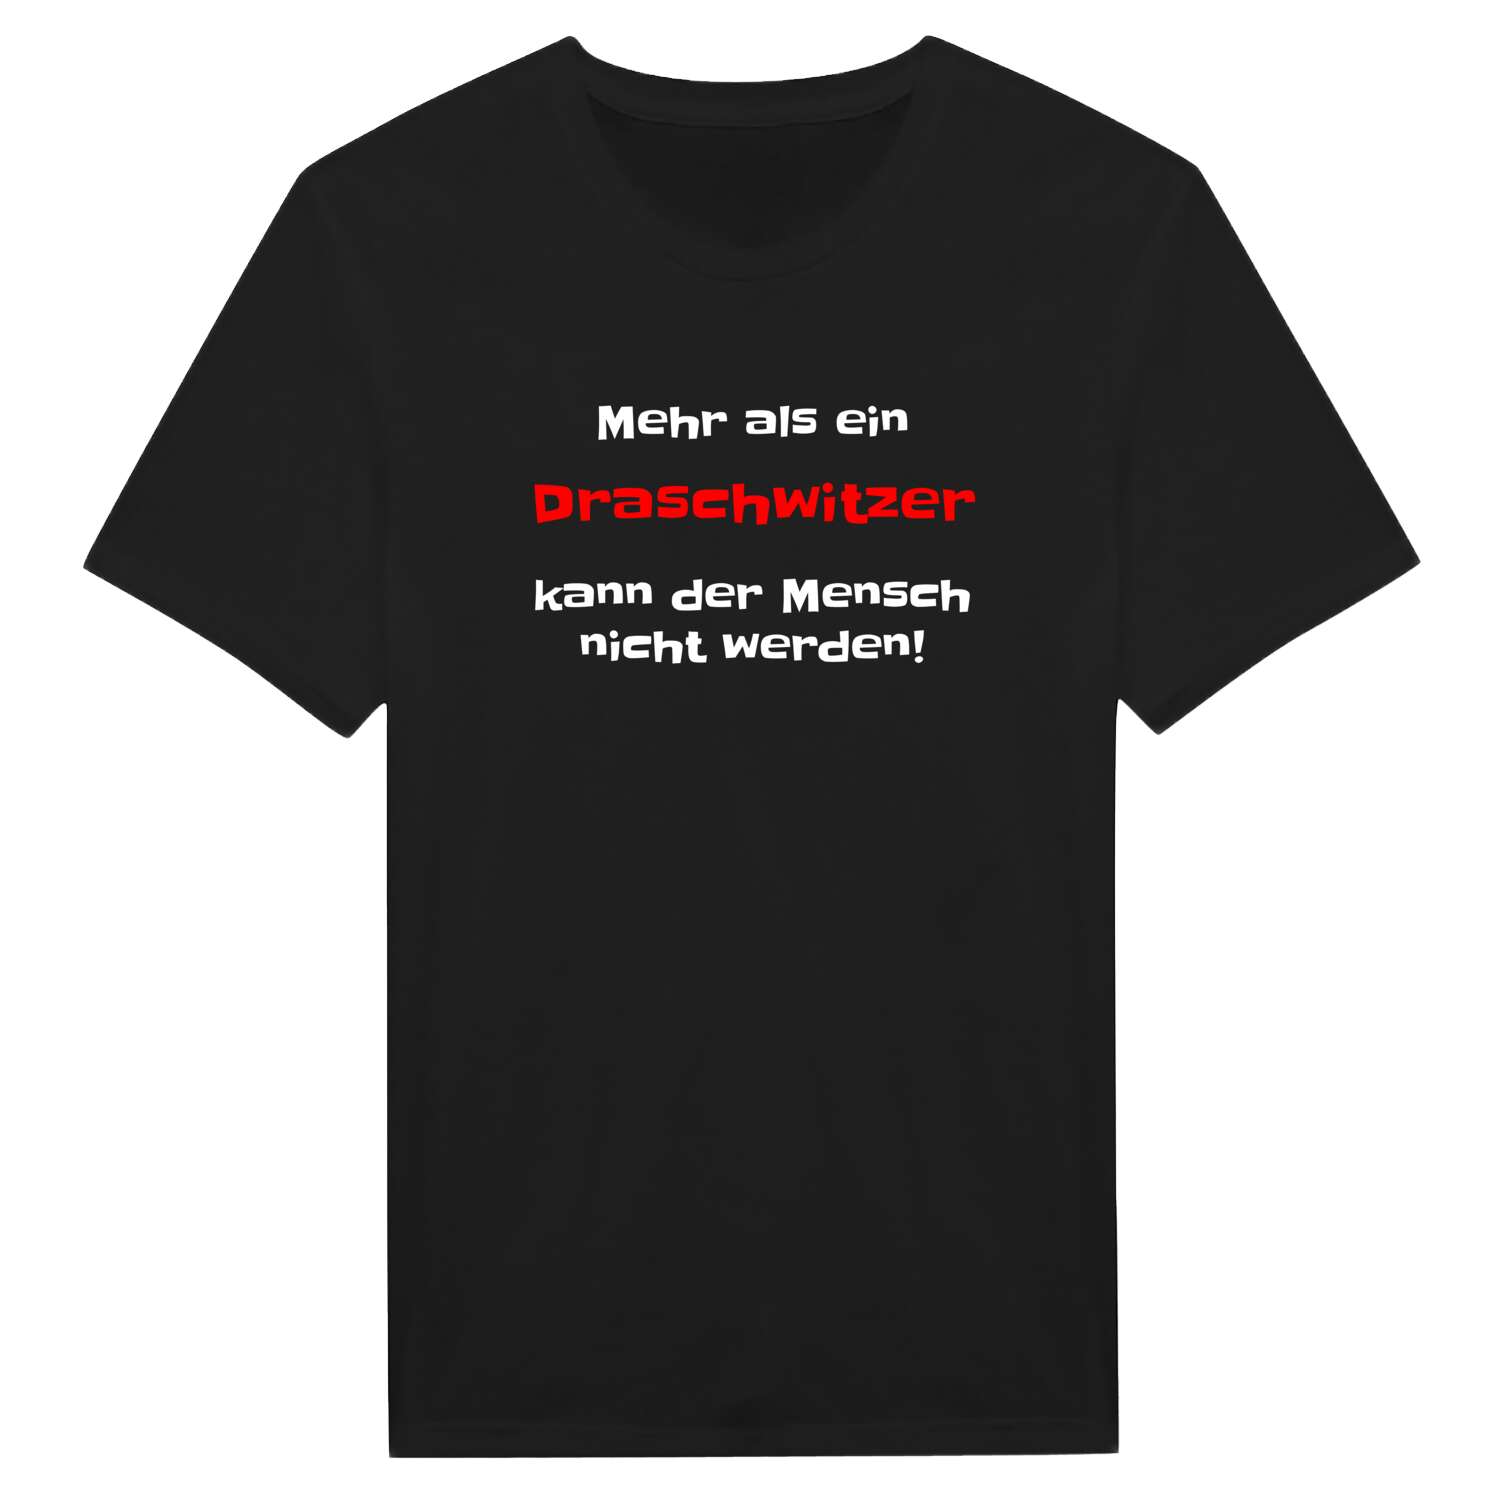 Draschwitz T-Shirt »Mehr als ein«